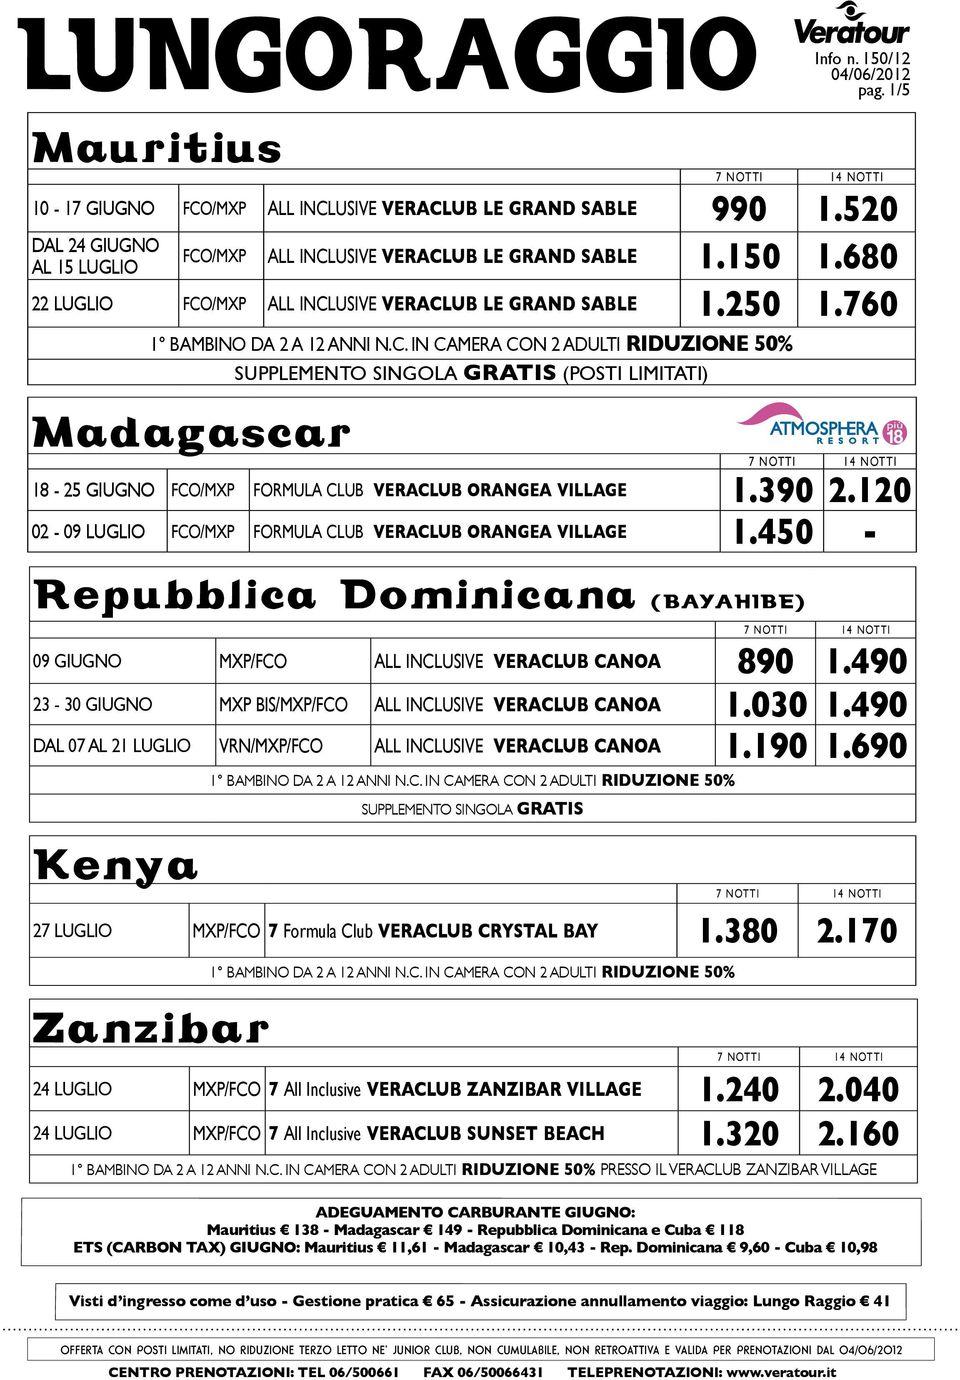 390 2.120 02-09 LUGLIO fco/mxp formula club veraclub orangea village 1.450 - repubblica dominicana (bayahibe) 09 giugno MXP/fco All Inclusive veraclub canoa 890 1.